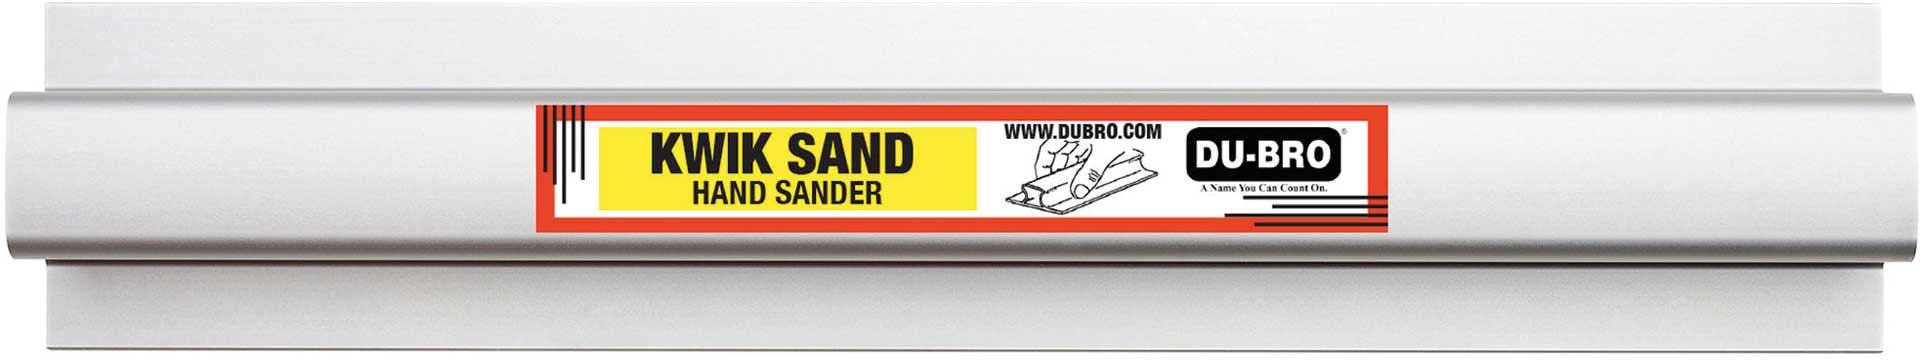 DUBRO Kwik Hand Sander 297x63mm (11 "x2,5") mit je 1x P80/150/220 Schleifpapier, Schleifblock, Schleifleiste, Alu